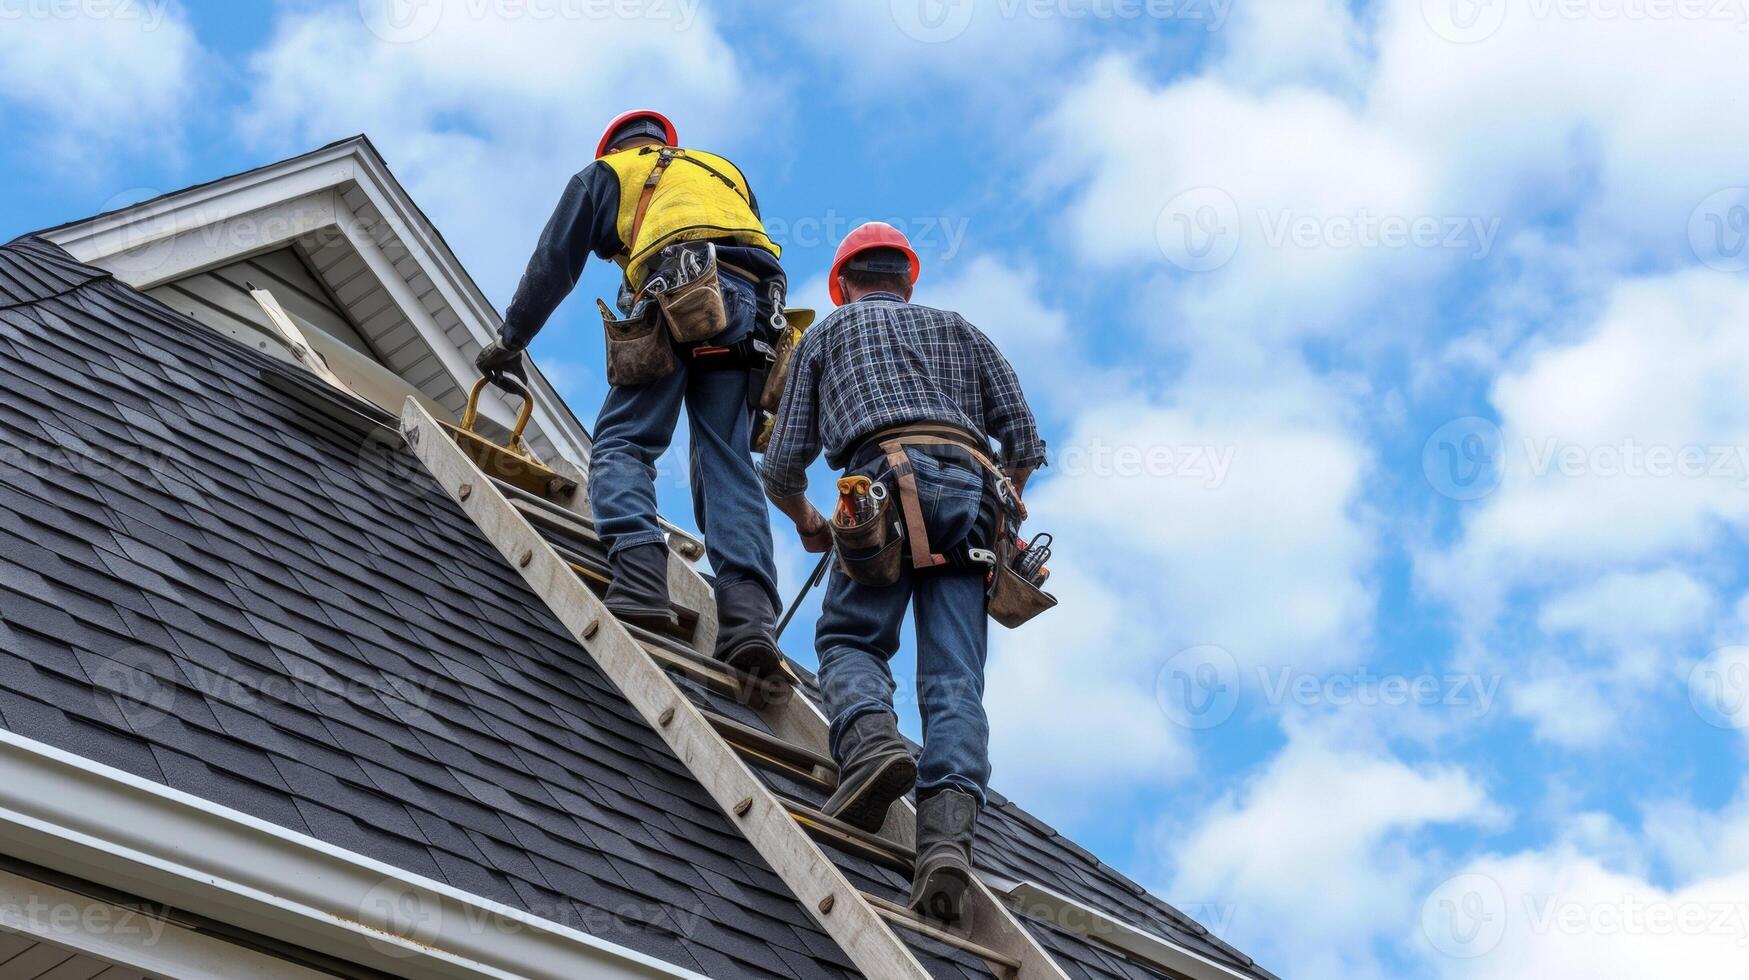 zwei Dachdecker steigen oben ein Leiter Tragen Werkzeuge und liefert wie Sie bereiten zu angehen ein herausfordernd Dach Reparatur Job auf ein mehrstöckig Haus foto